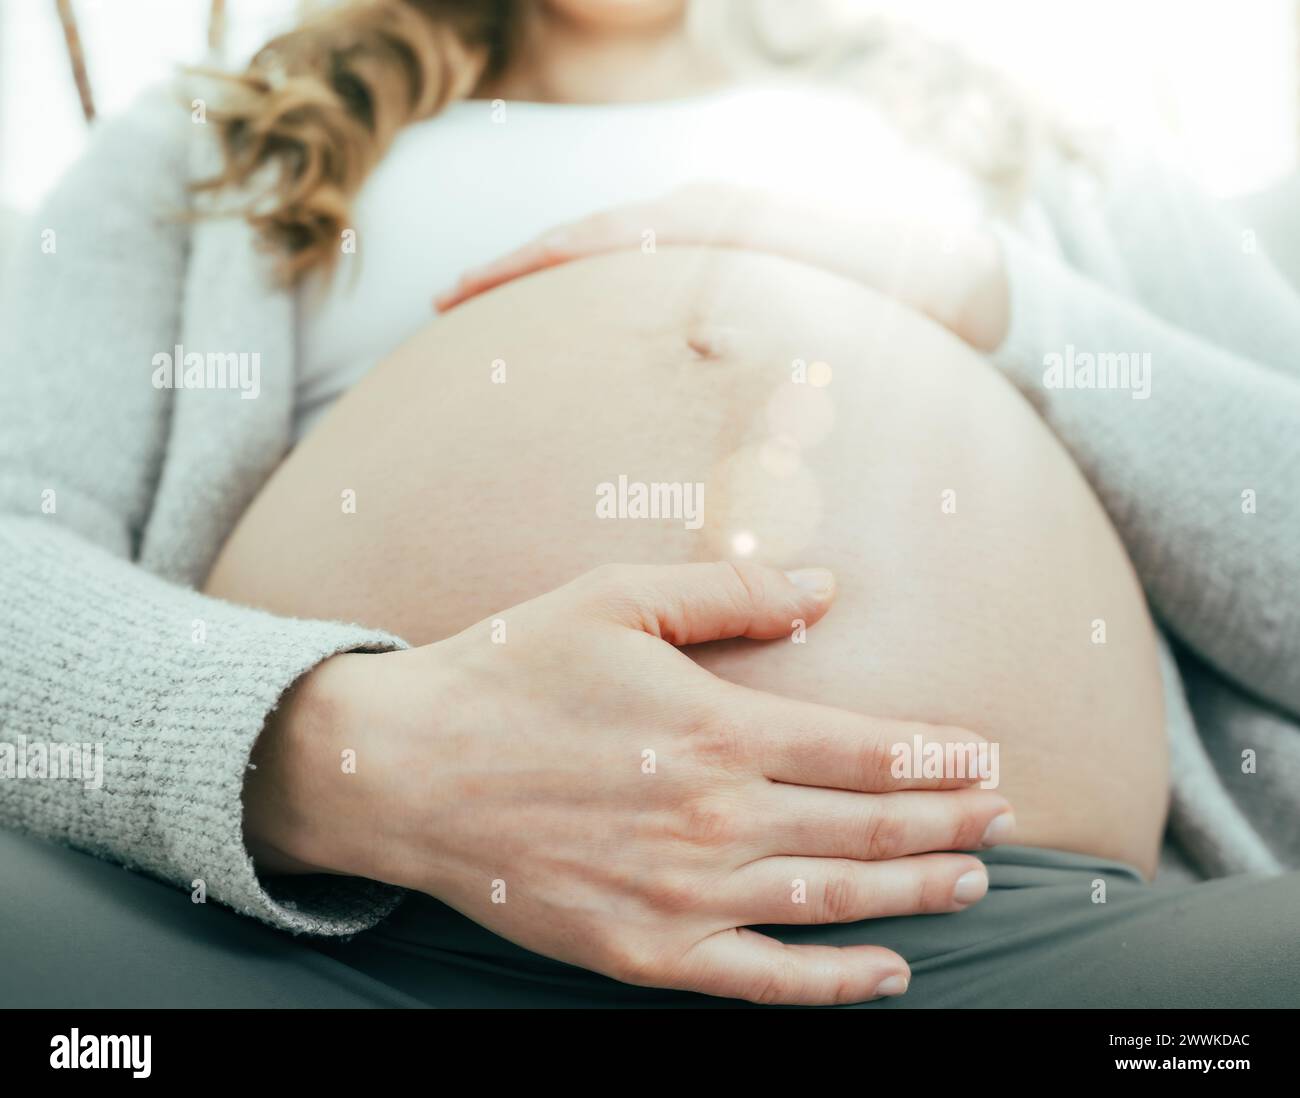 Description : vue frontale de la femme assise sur le canapé tenant doucement son ventre dans les derniers mois de grossesse. Grossesse troisième trimestre - semaine 34. Frontal Banque D'Images